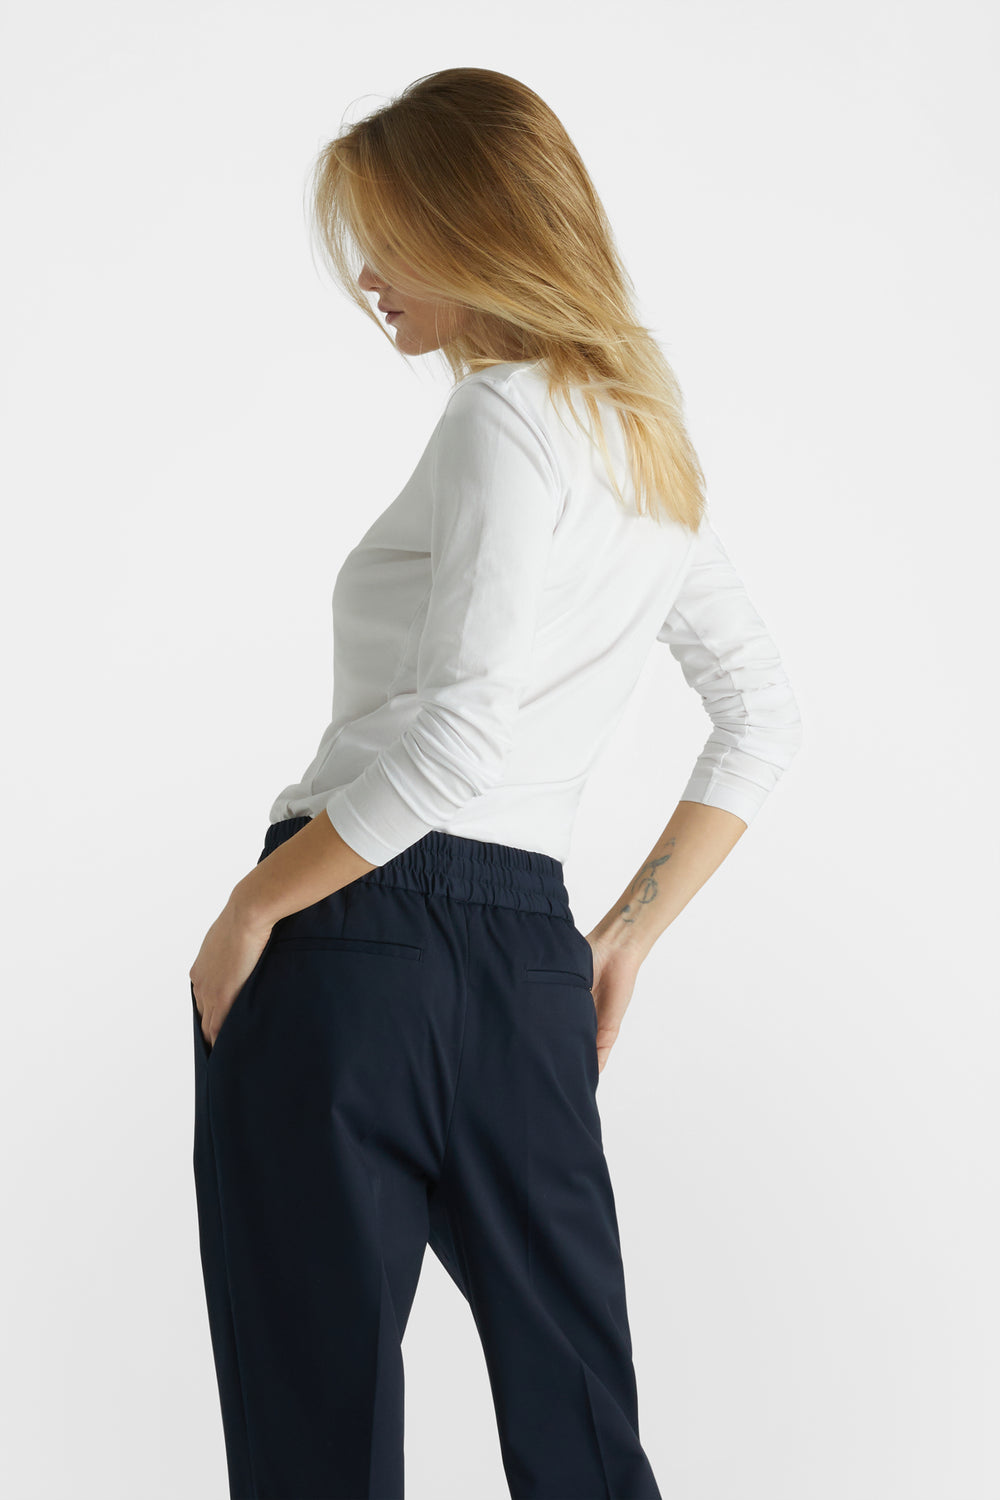 XZNGL Womens Jeans Size 14 Women Fashion Leisure Pocket Button